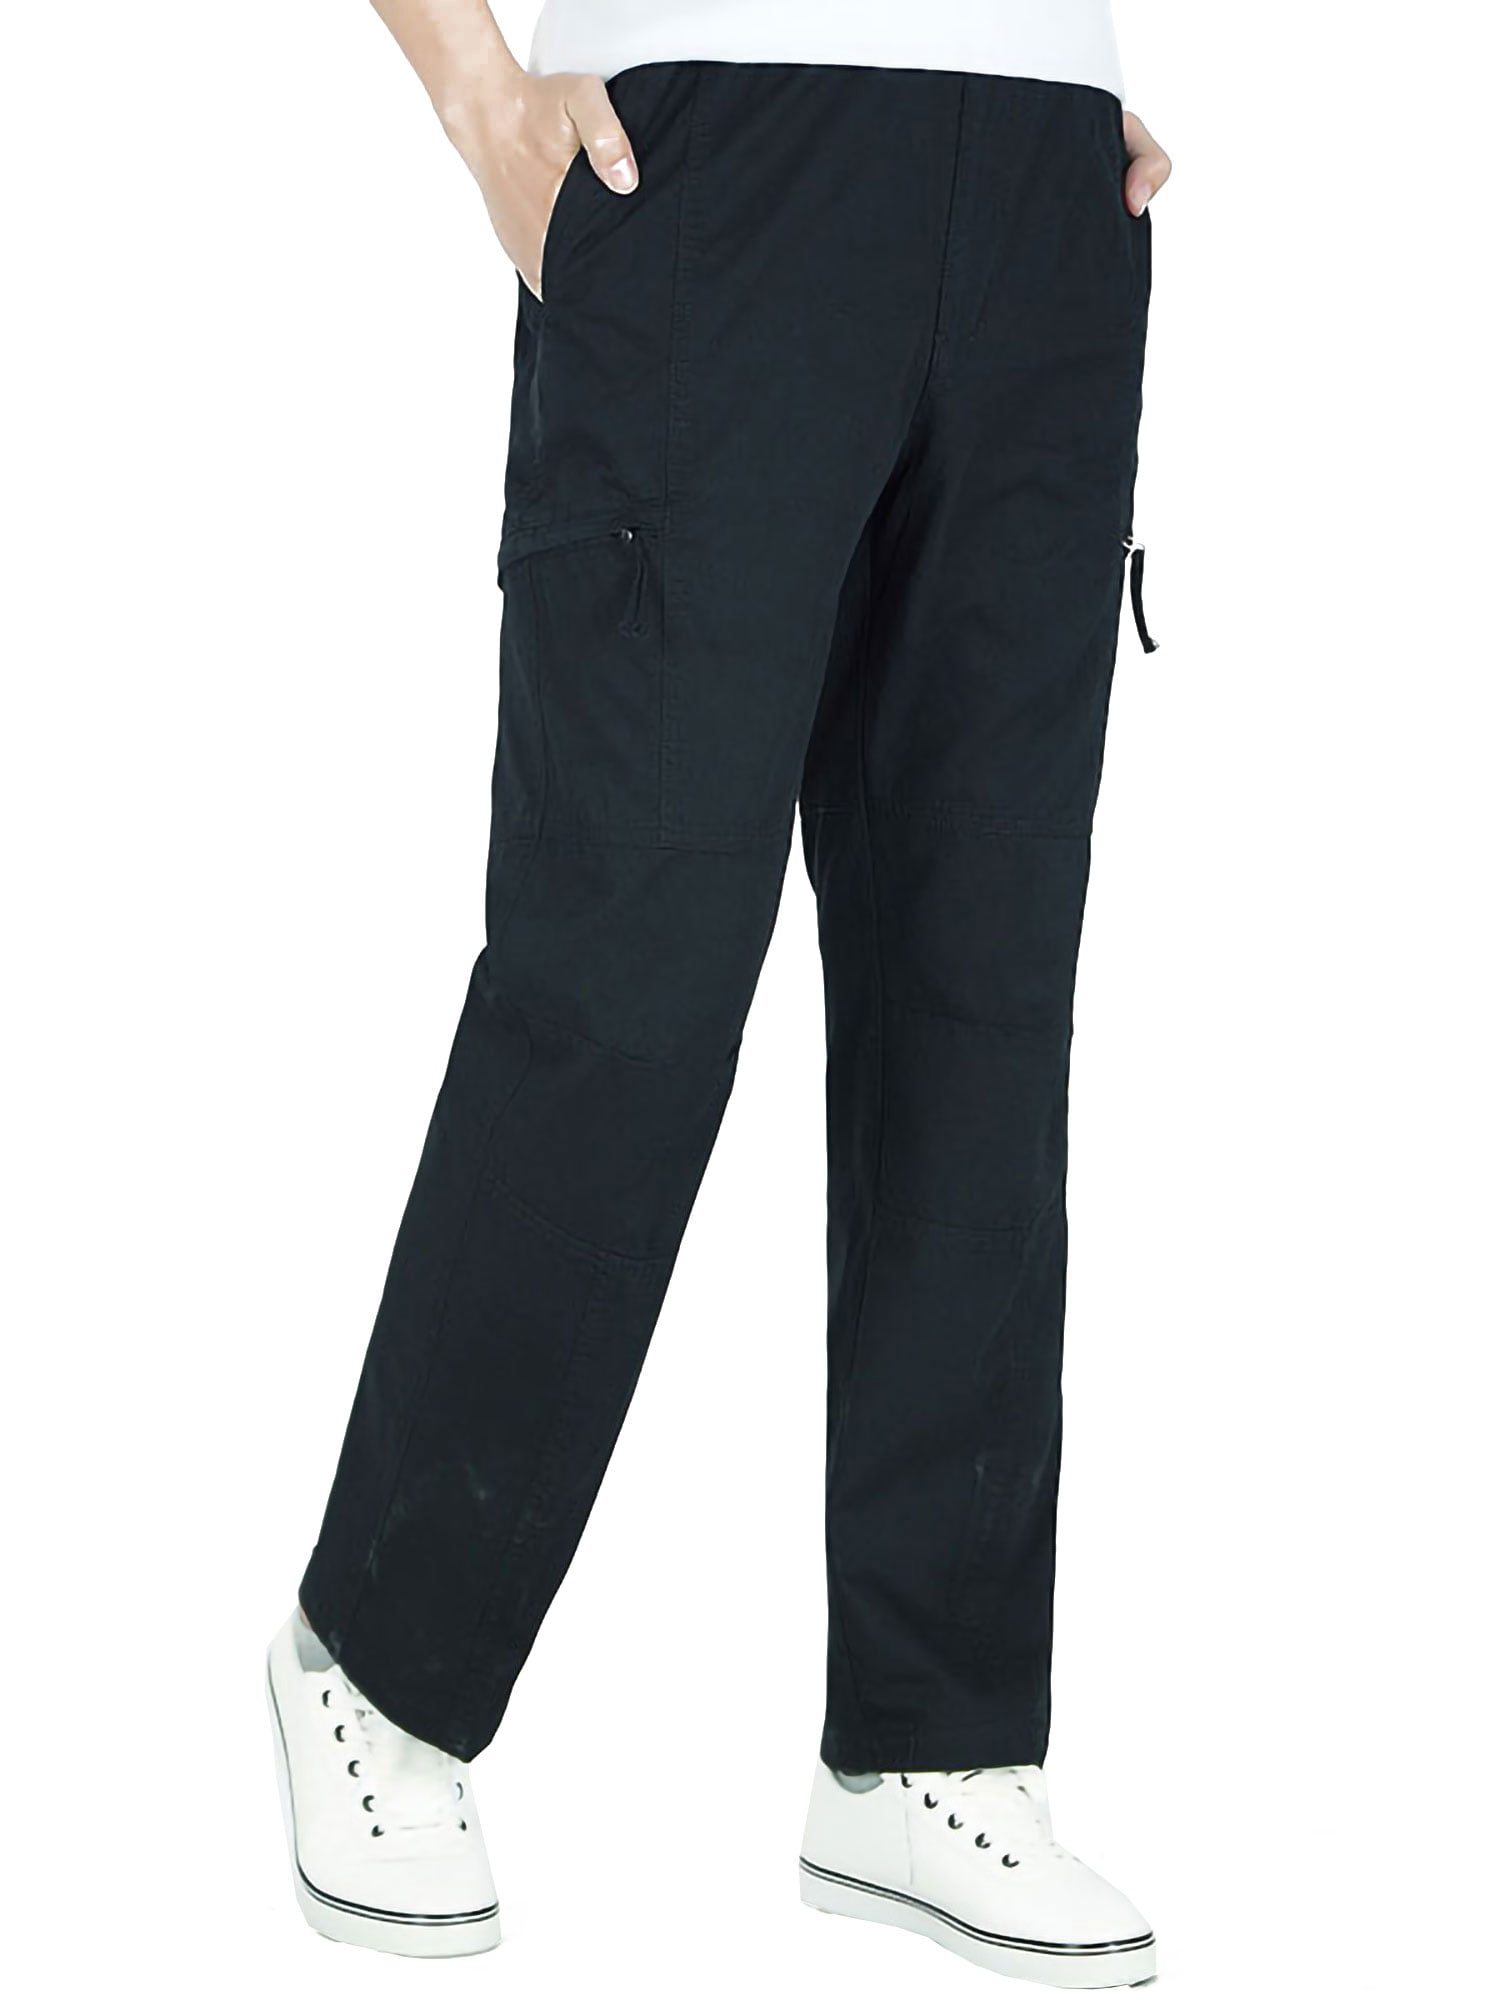 YUNY Men Leisure Long Multi-Pocket Slim Fit Work Wear Fit Cargo Pants Black 29